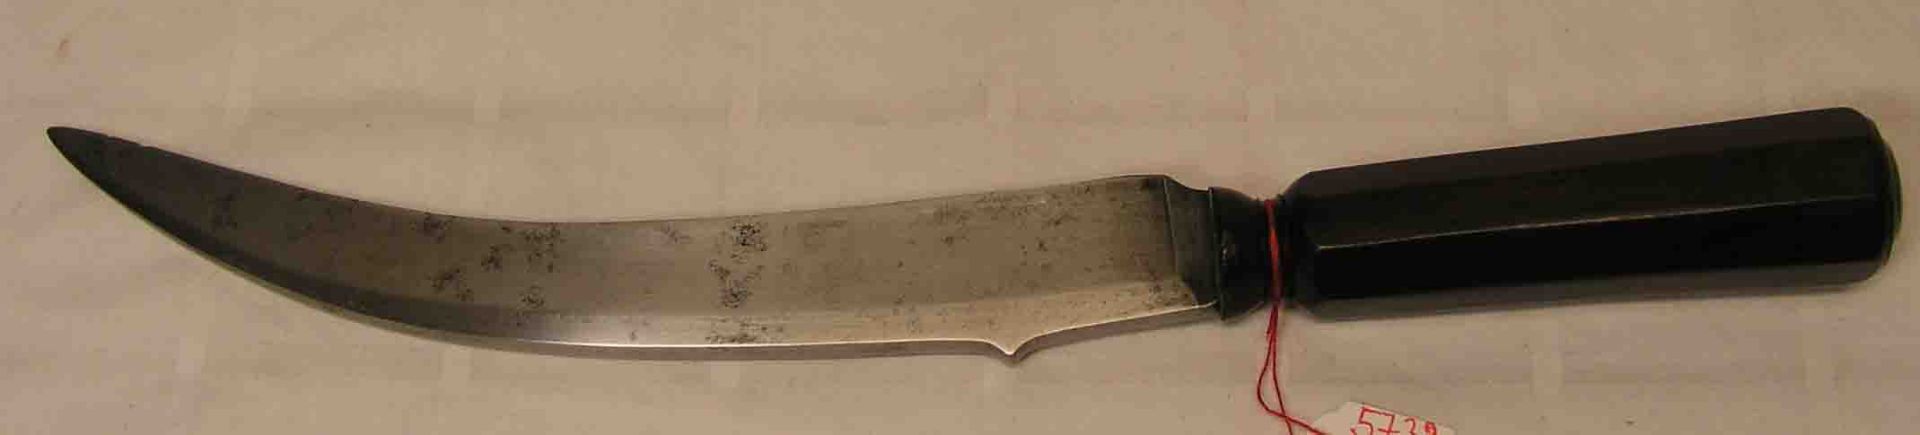 Indisches Messer, gekrümmte Klinge, Länge: 37cm.- - -20.17 % buyer's premium on the hammer price19.